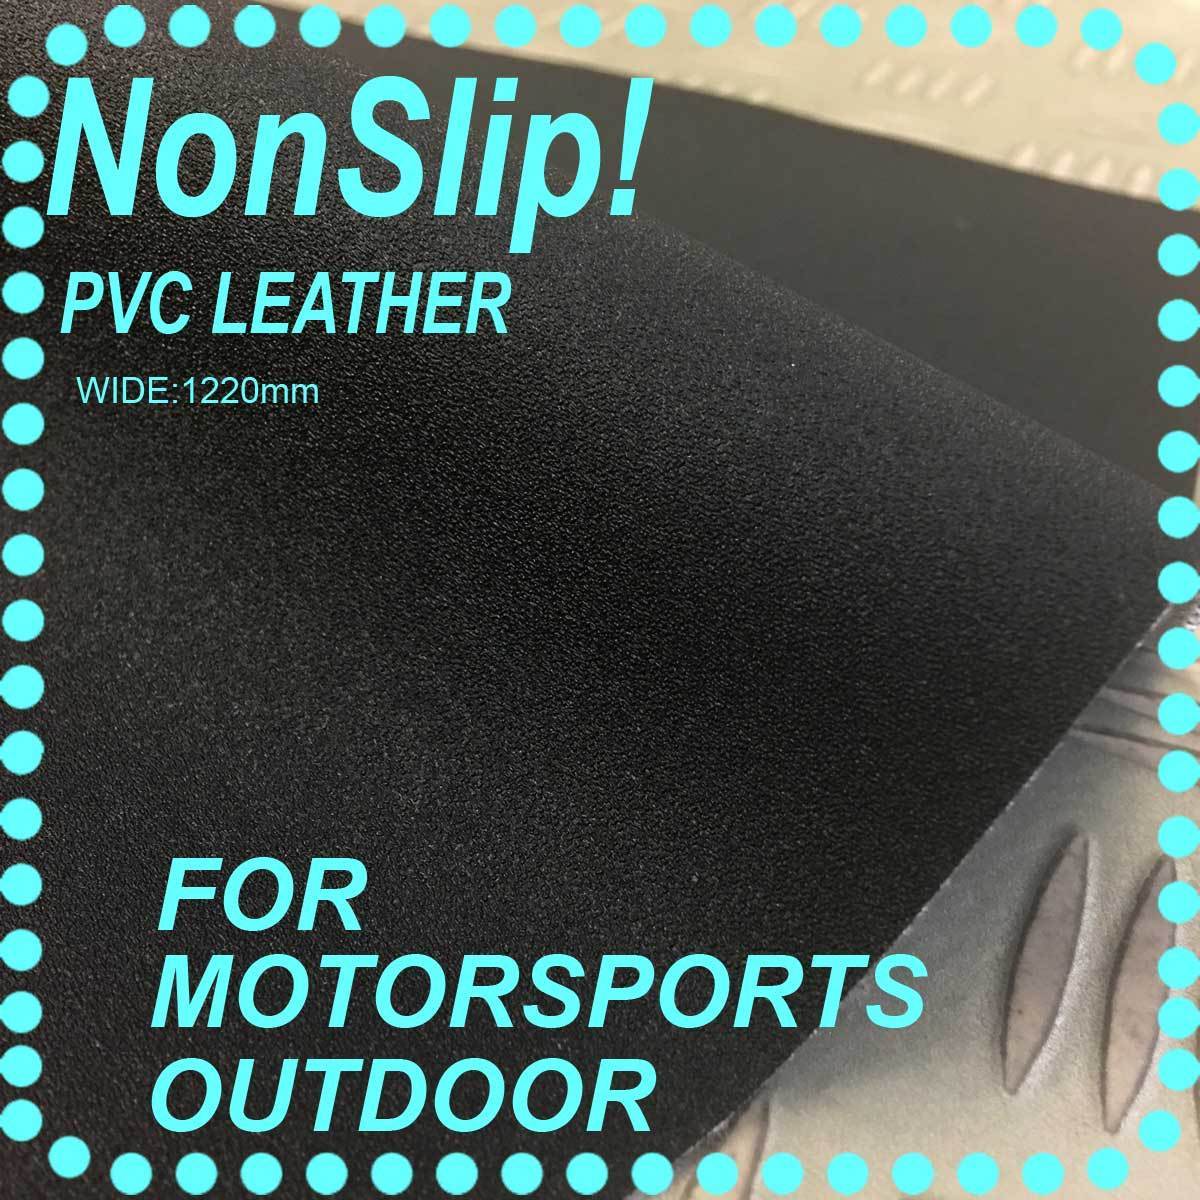 【ノンスリップレザー】アウトドア・モータースポーツ用PVCレザー【巾122ｃｍ】滑り止め機能を重視しイスにも最適な機能を発揮します。